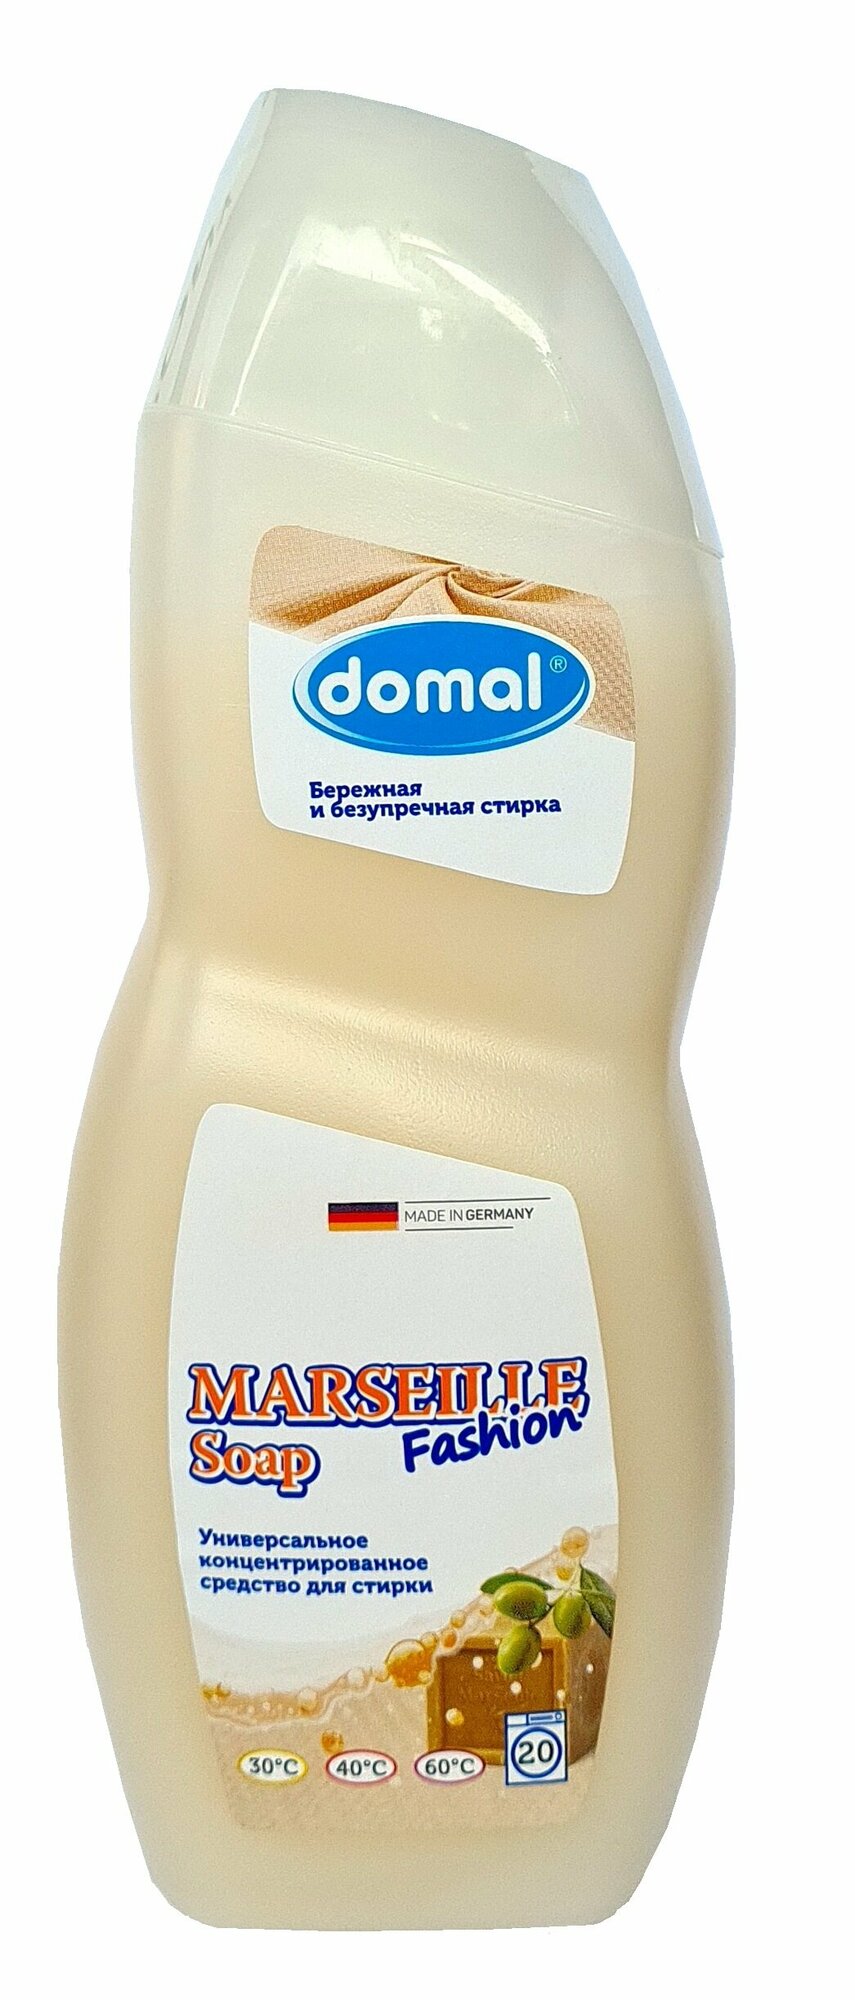 Универсальное концентрированное средство Domal (Домаль) для стирки "Марсельское мыло" (MARSEILLE SOAP FASHION), 750 мл (Германия)